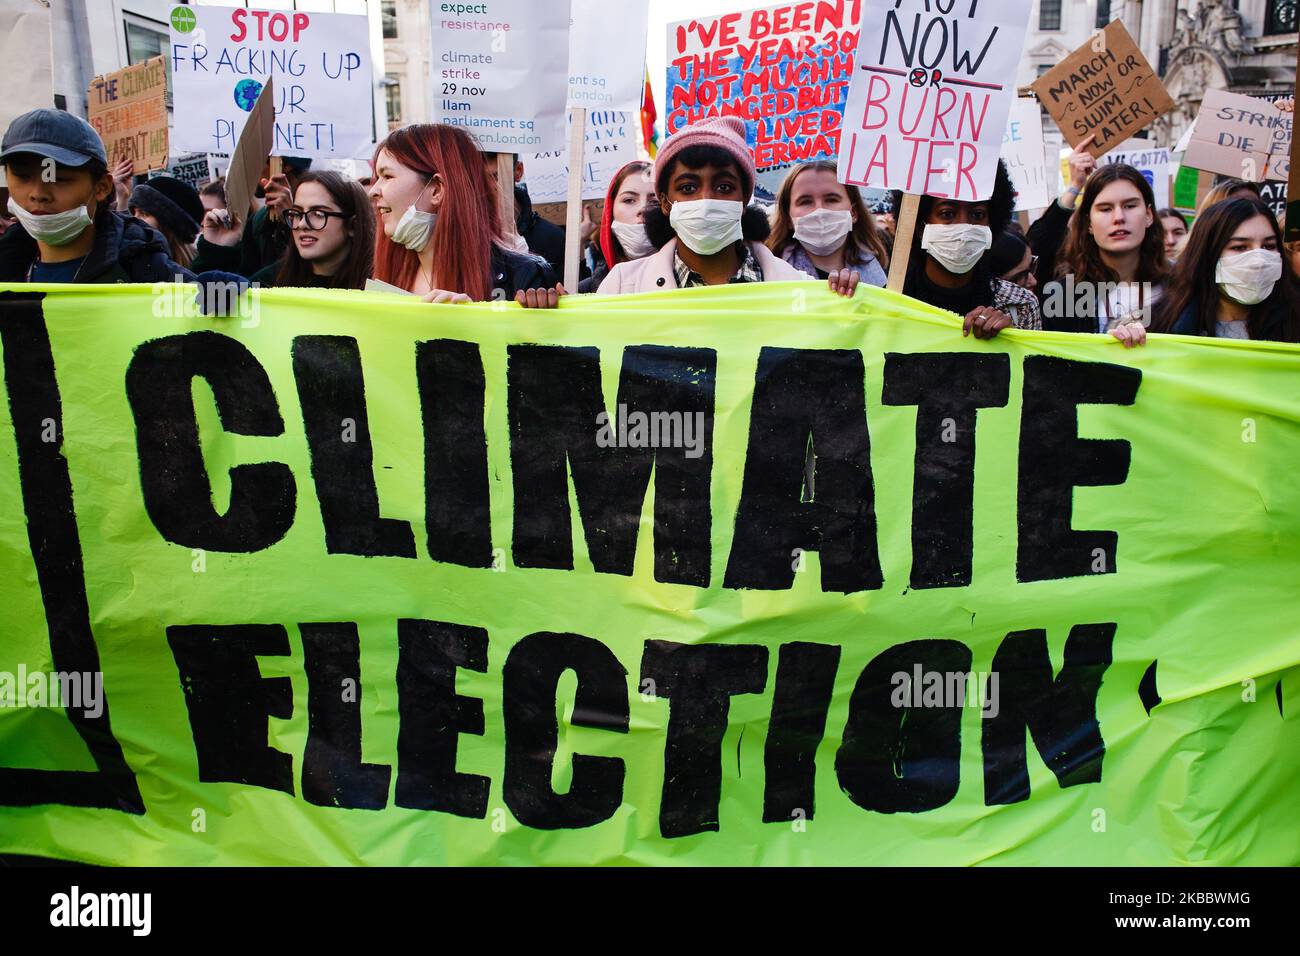 Les activistes marchent derrière une bannière appelant à une "élection climatique" lors de la dernière manifestation "Climate Strike" à Londres, en Angleterre, sur 29 novembre 2019. Les électeurs britanniques se rendent aux urnes lors d'une élection générale qui a lieu dans seulement quelques semaines, sur 12 décembre. La grève climatique d'aujourd'hui arrive à la fin d'une année au cours de laquelle l'activisme climatique a pris le devant de la scène dans les villes du monde entier, mené à la fois par le mouvement d'attaquant « Fridays for future » inspiré par Greta Thunberg et par les activistes de la rébellion contre l'extinction tout aussi mondiale. La semaine prochaine voit les deux semaines COP25 de l'ONU changement climatique C Banque D'Images